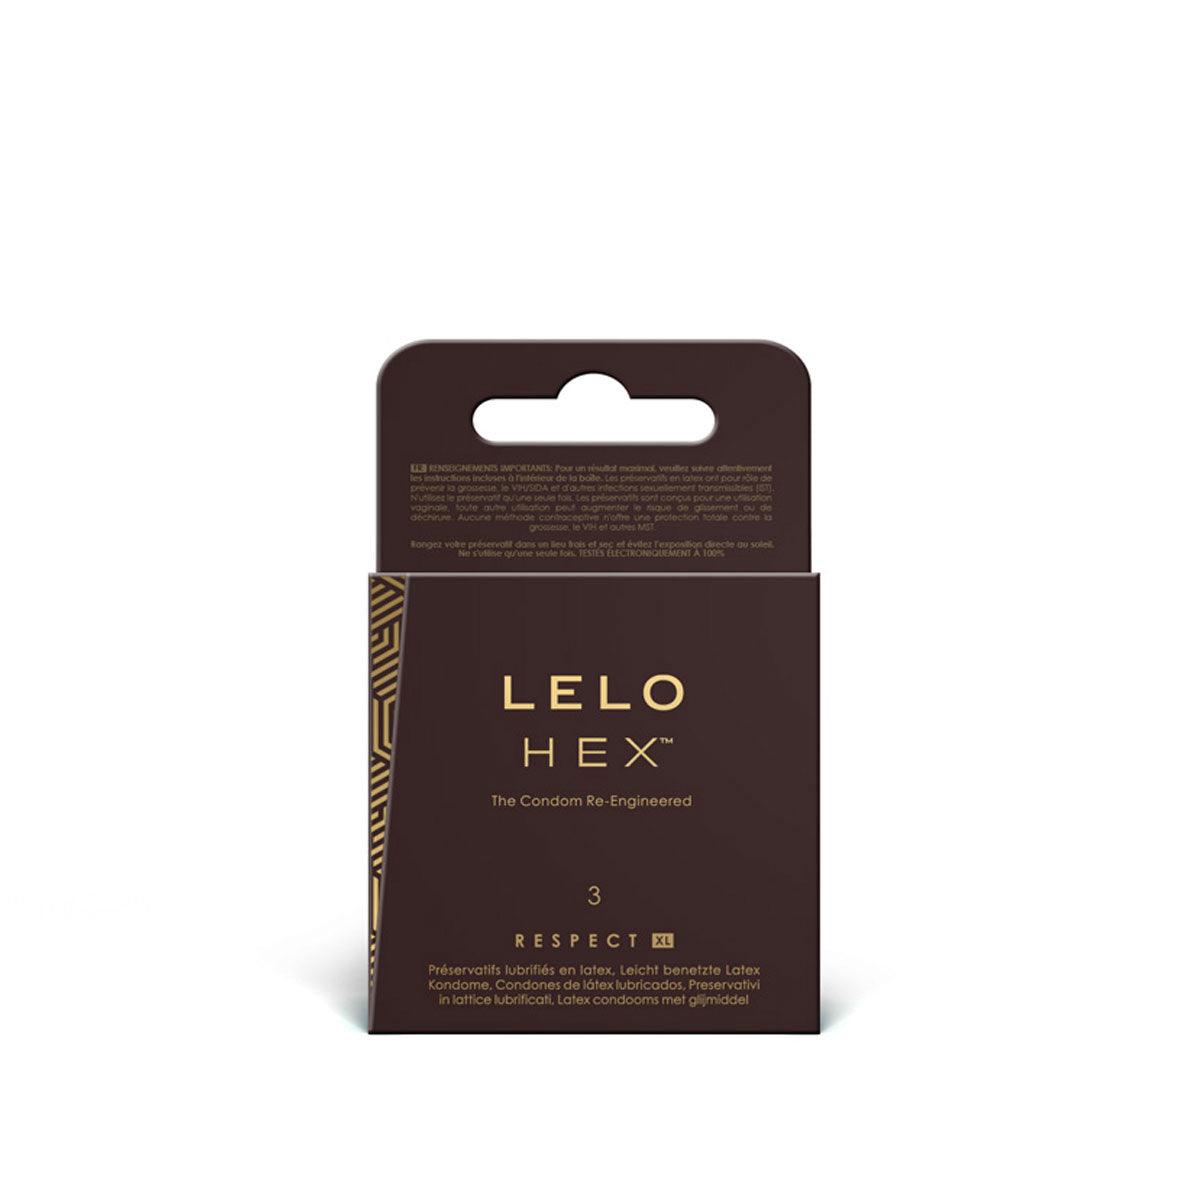 LELO Hex Respect XL Condoms 3pk - shop enby